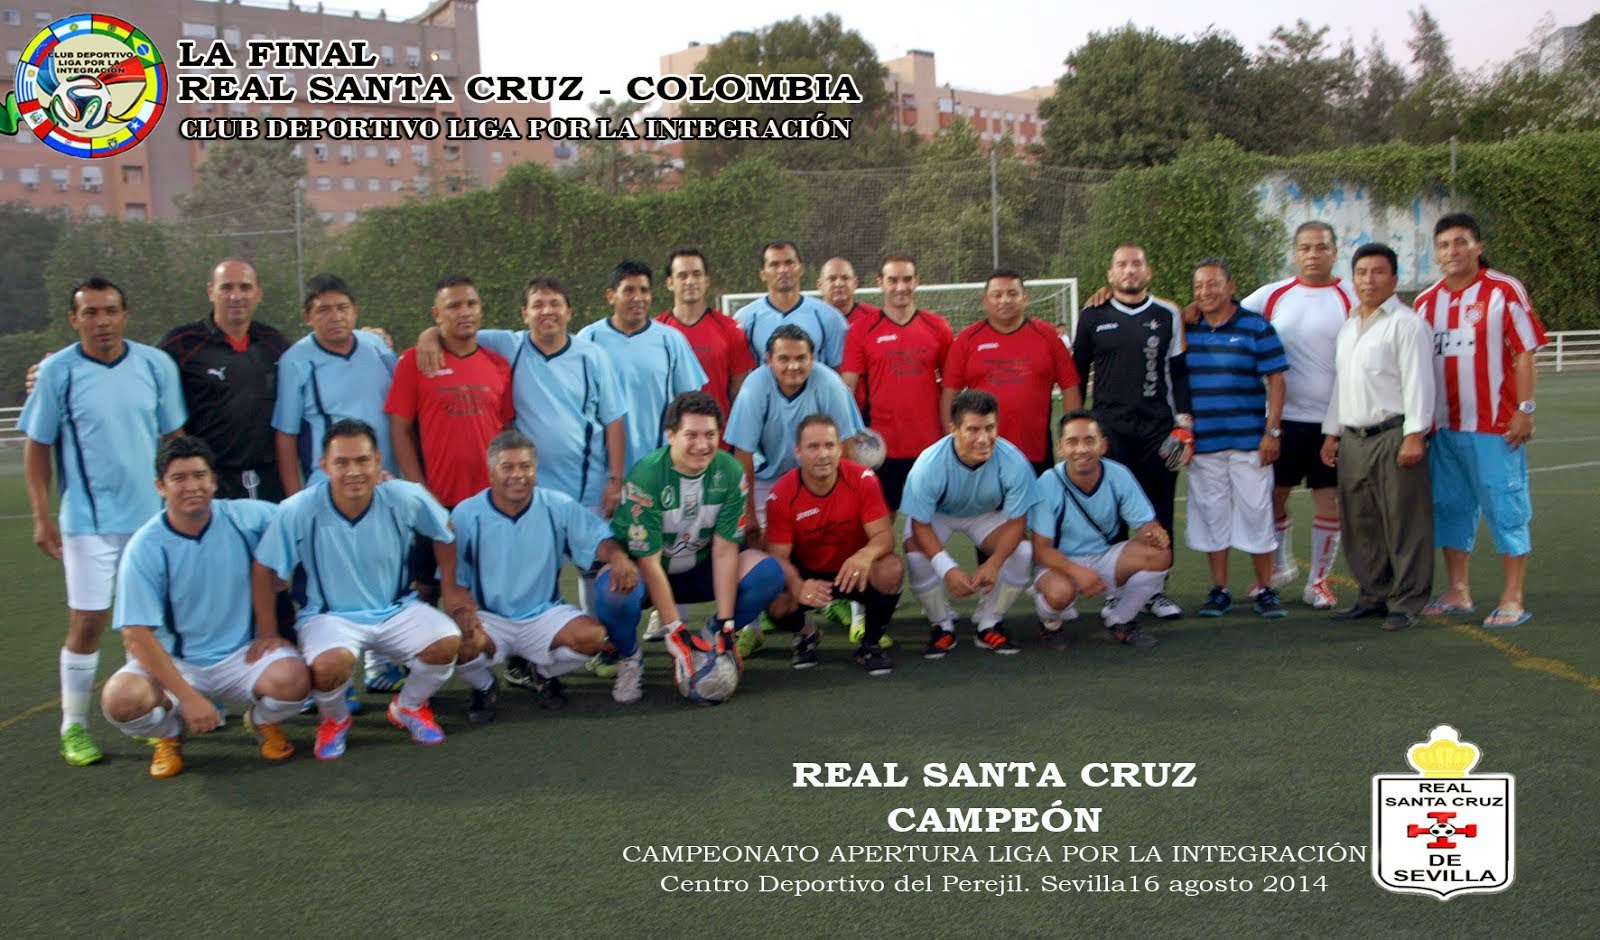 La Final, 16 agosto 2014 Real Santa Cruz - Colombia